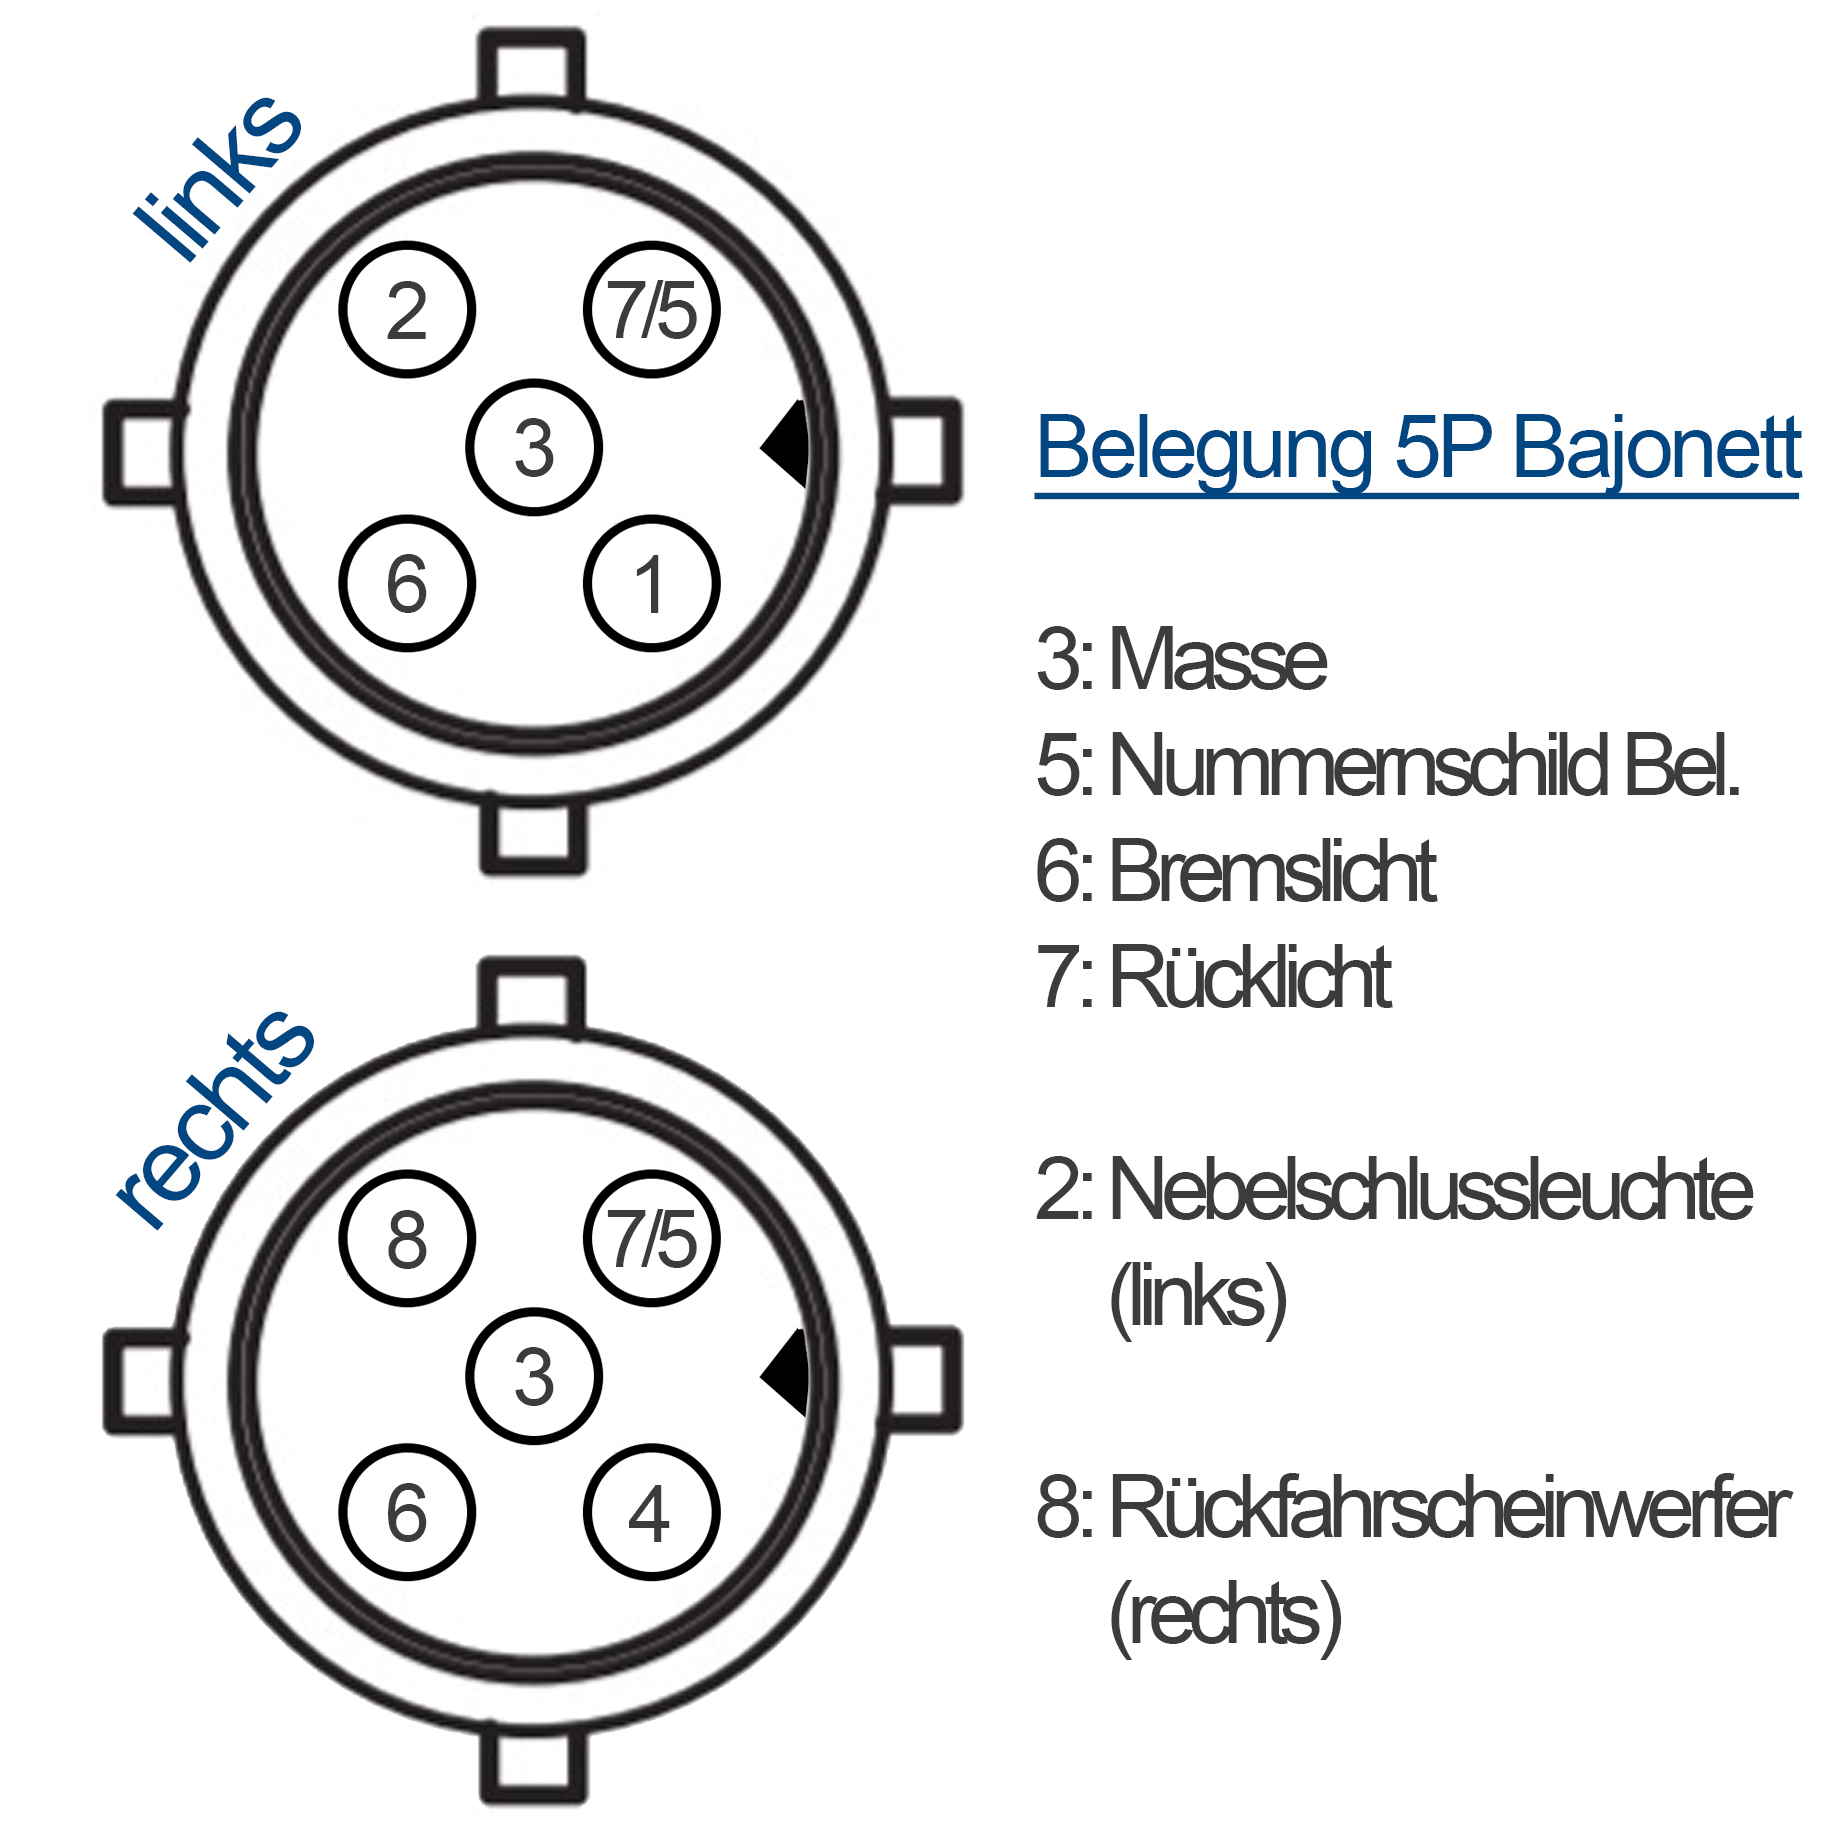 Kabelsatz Anhänger Beleuchtung - 8m - 13Pol - 5P Bajonett